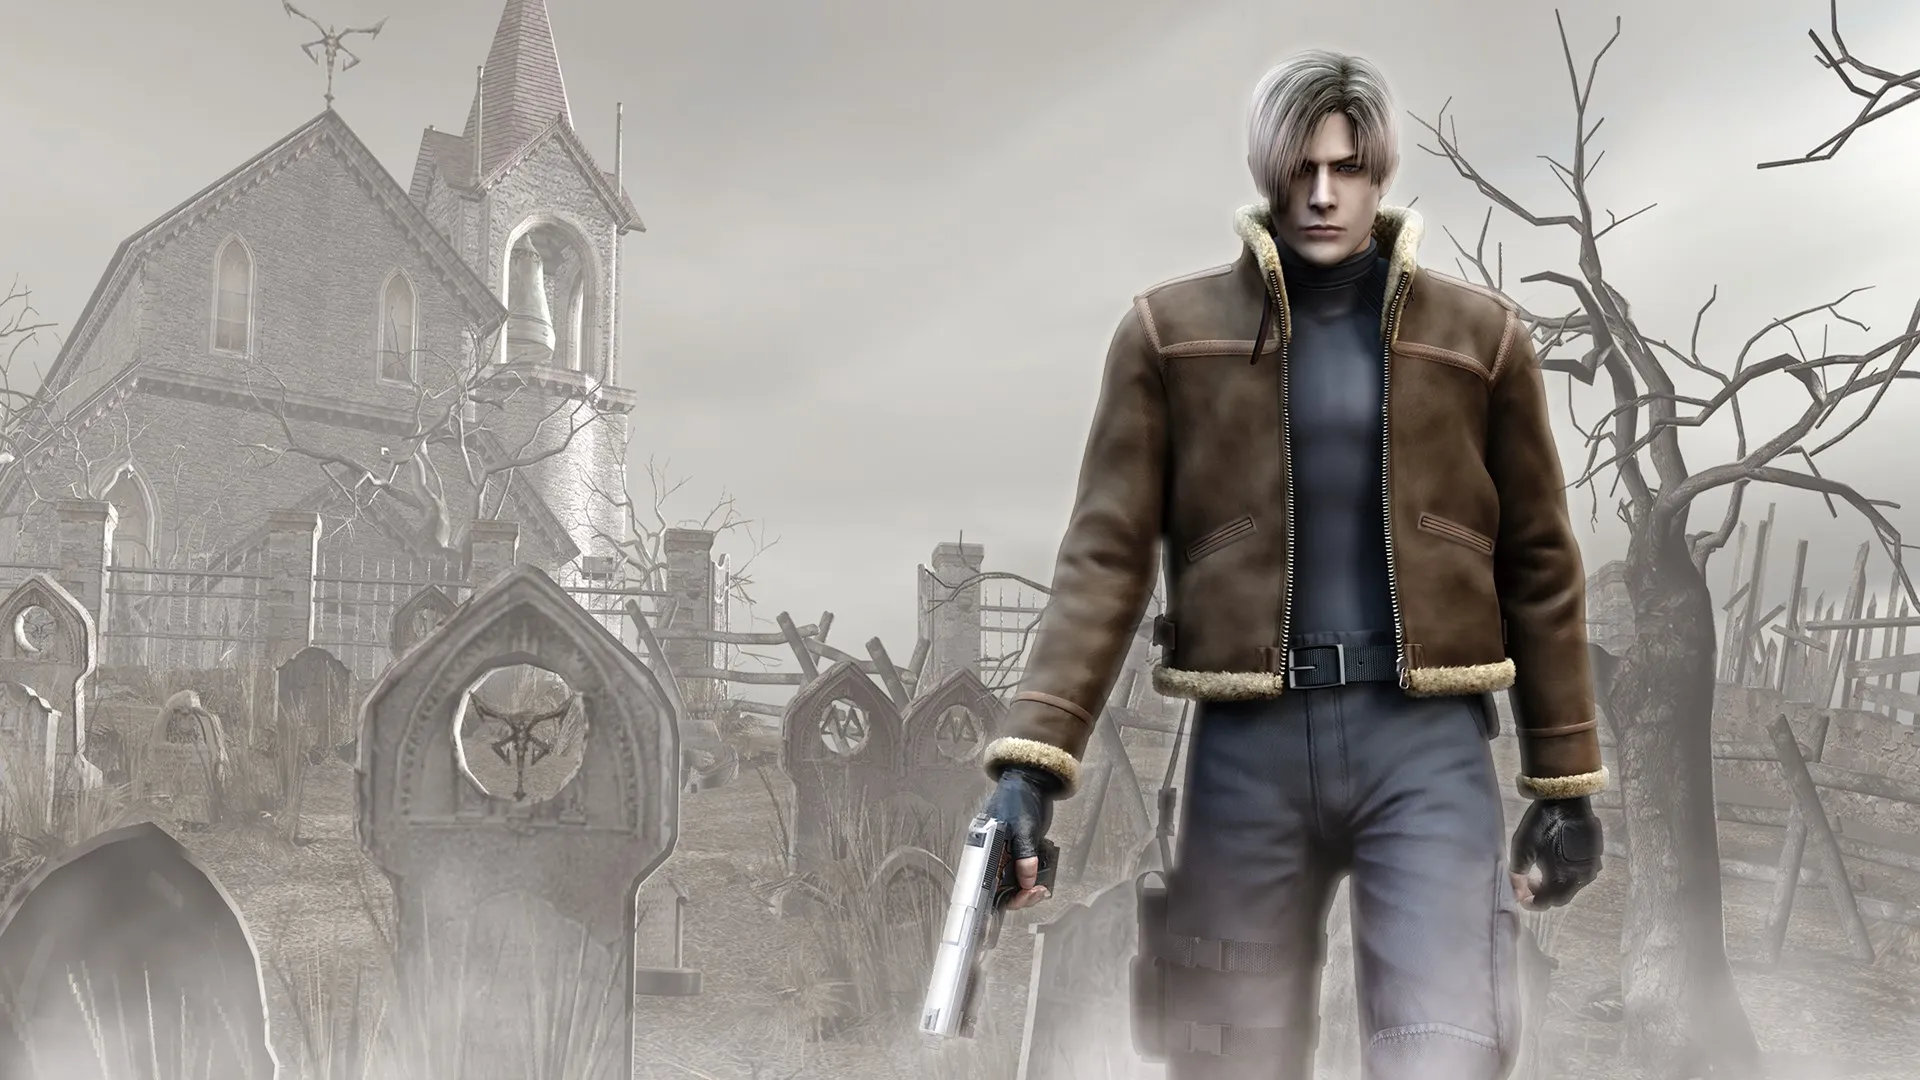 Resident Evil 4 Remake pode estar prestes a ser anunciado, pelo menos é isso que dá a entender em um pequeno teaser ou easter egg.